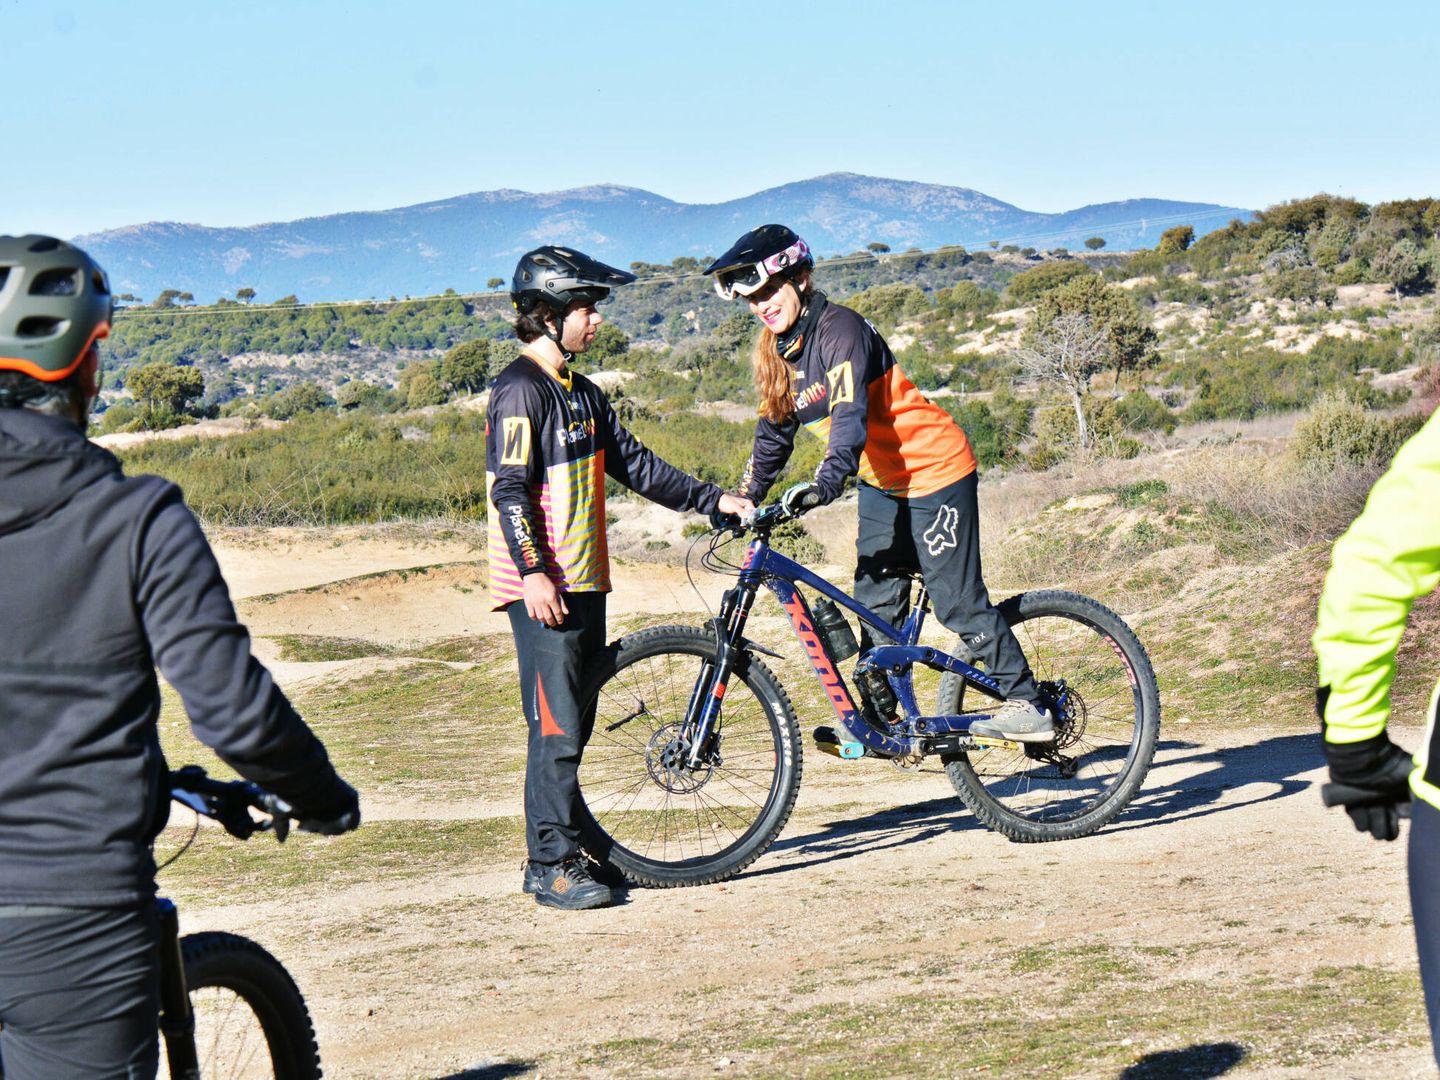 Saber montar en bicicleta de montaña no siempre significa conocer las bases técnicas más seguras y correctas. (PlanetMtb)